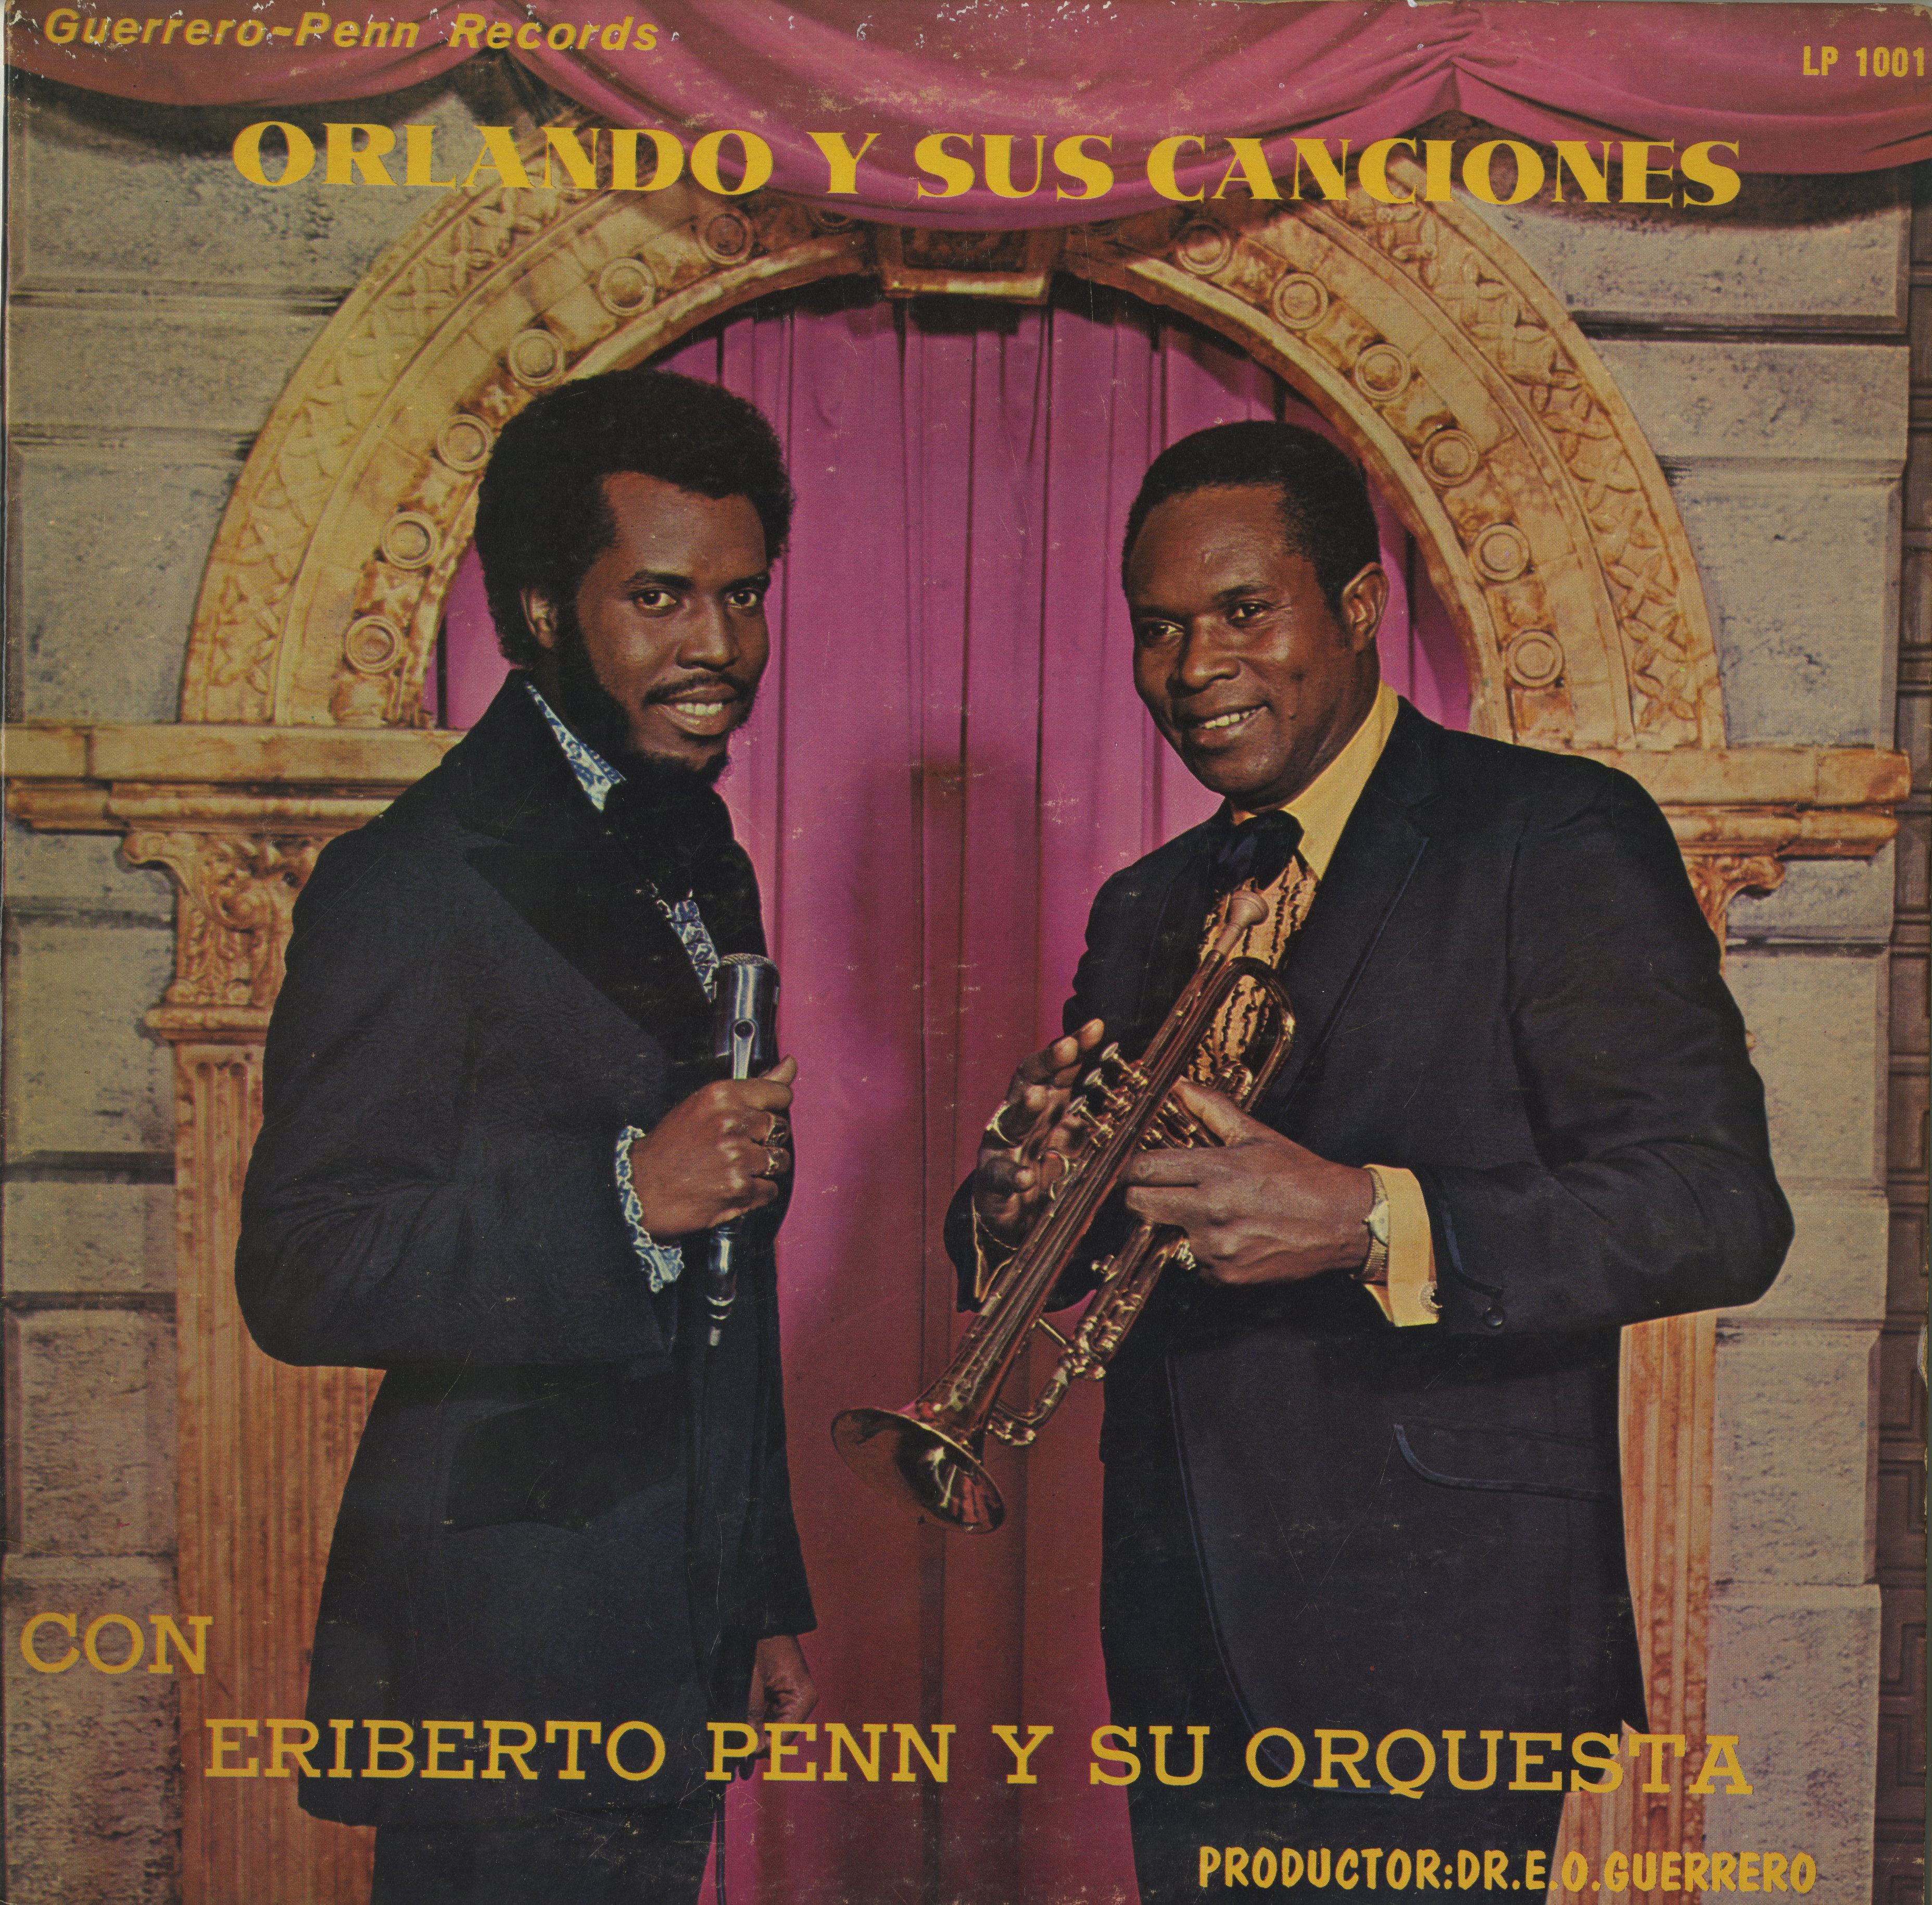 Orlando y sus canciones con Eriberto Penn y su orquesta, LP Album Cover, ca. 1970s